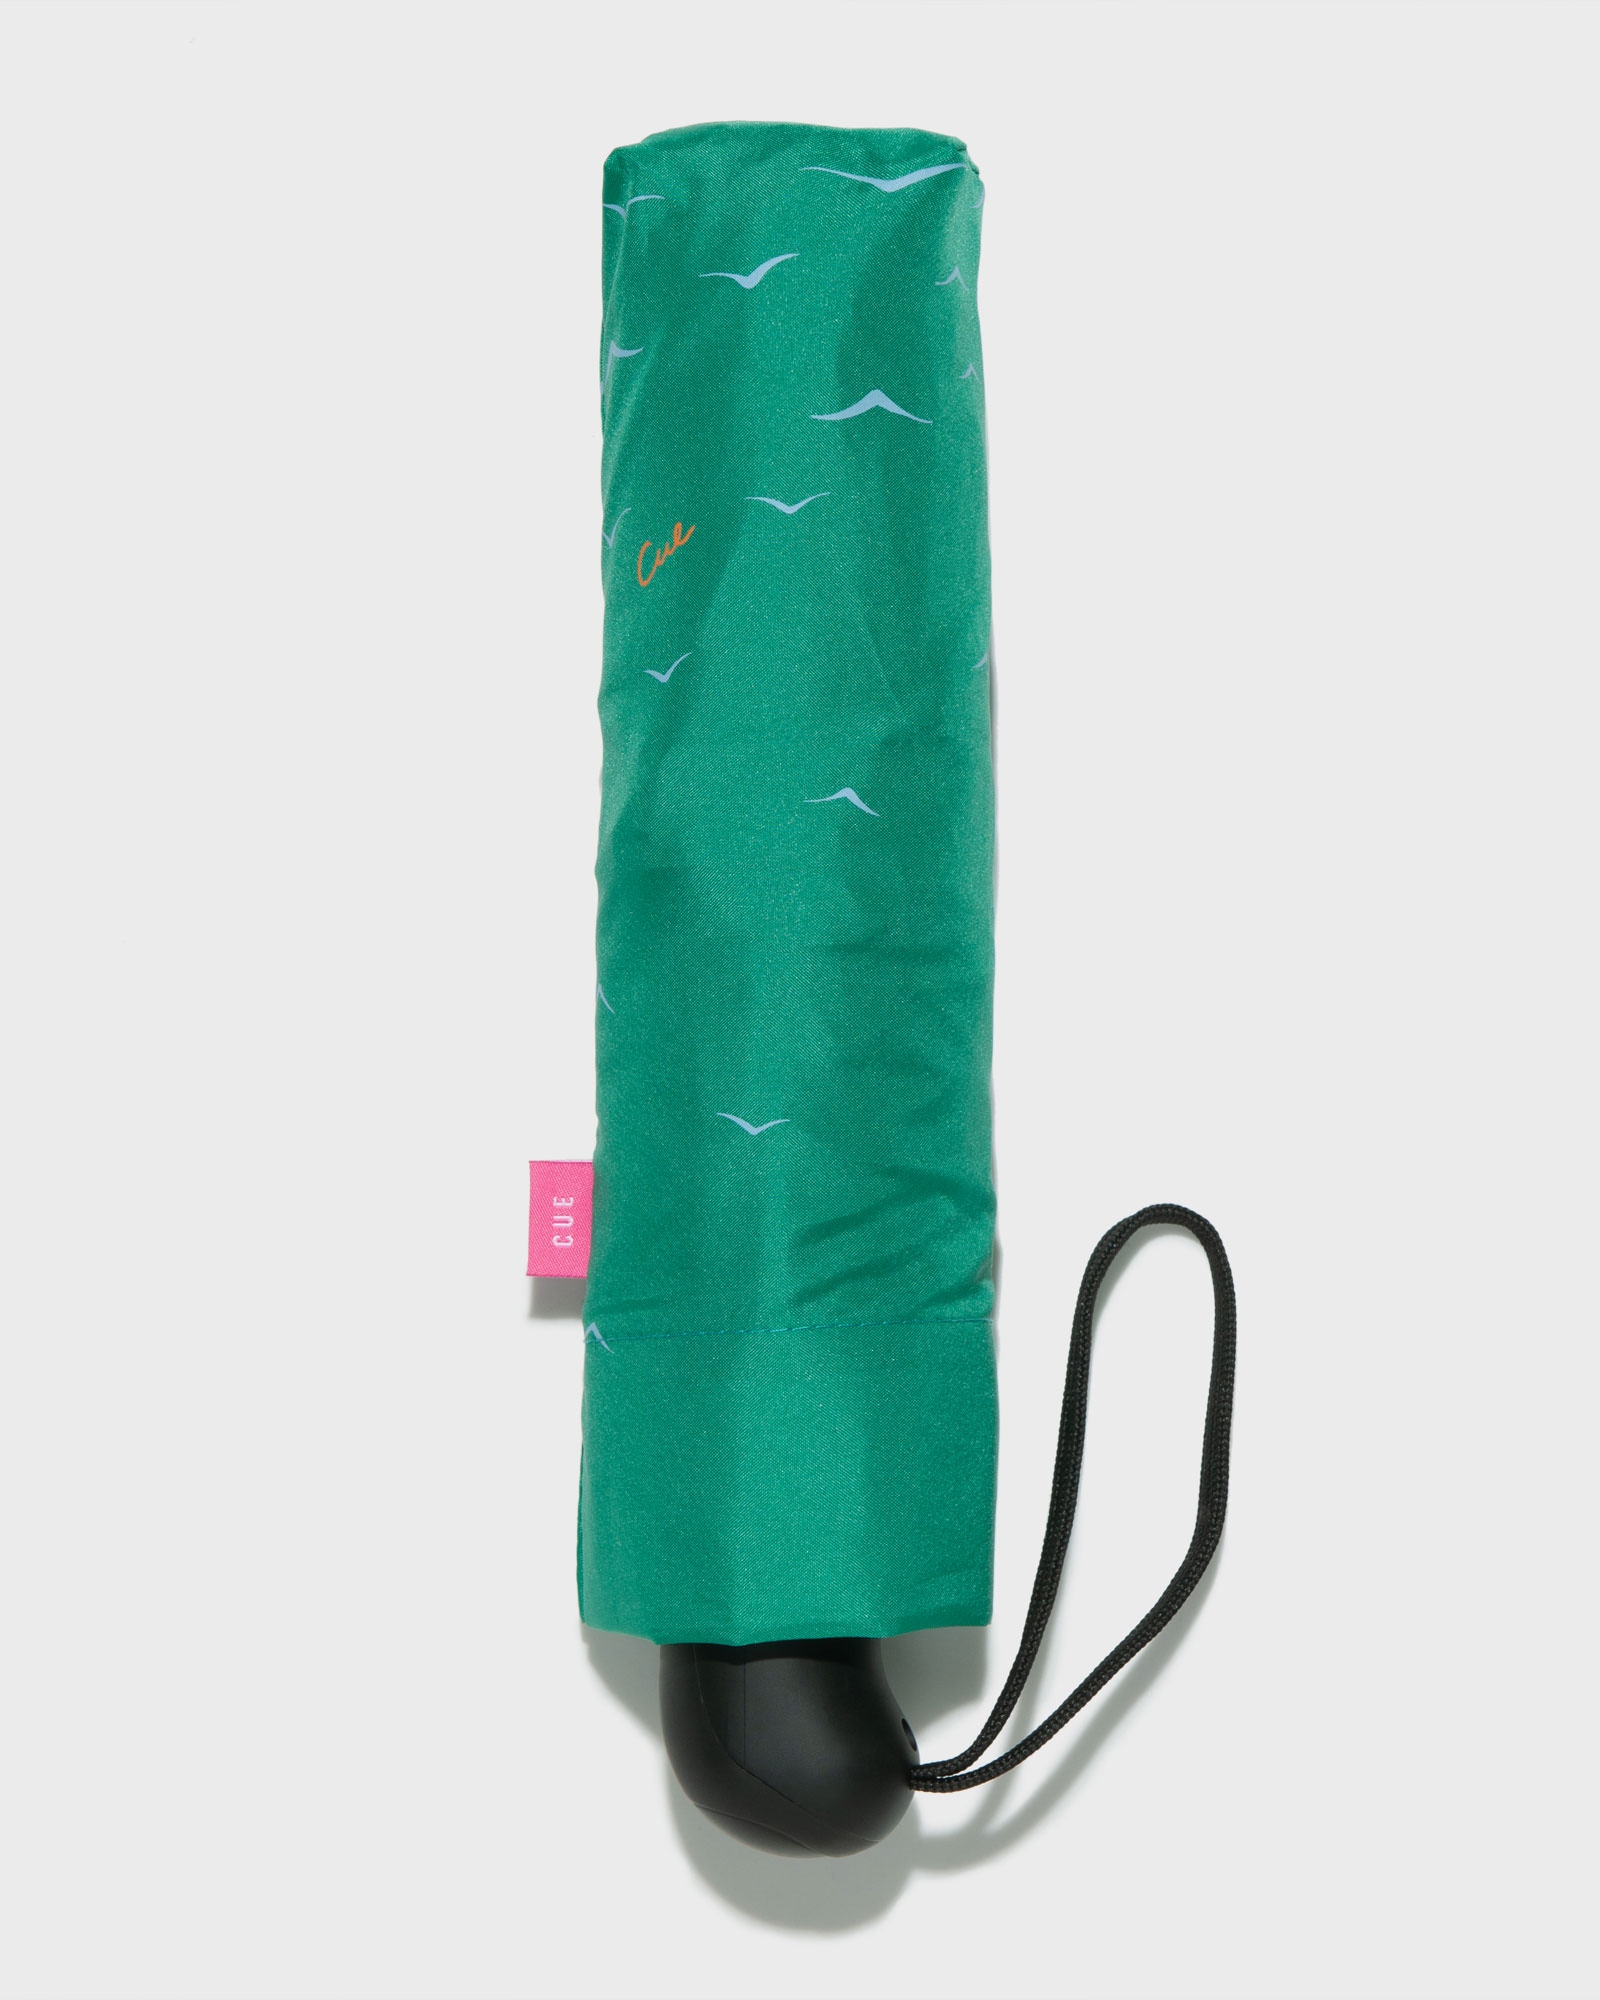 Accessories | Vivid Green Crane Umbrella | 374 Vivid Green